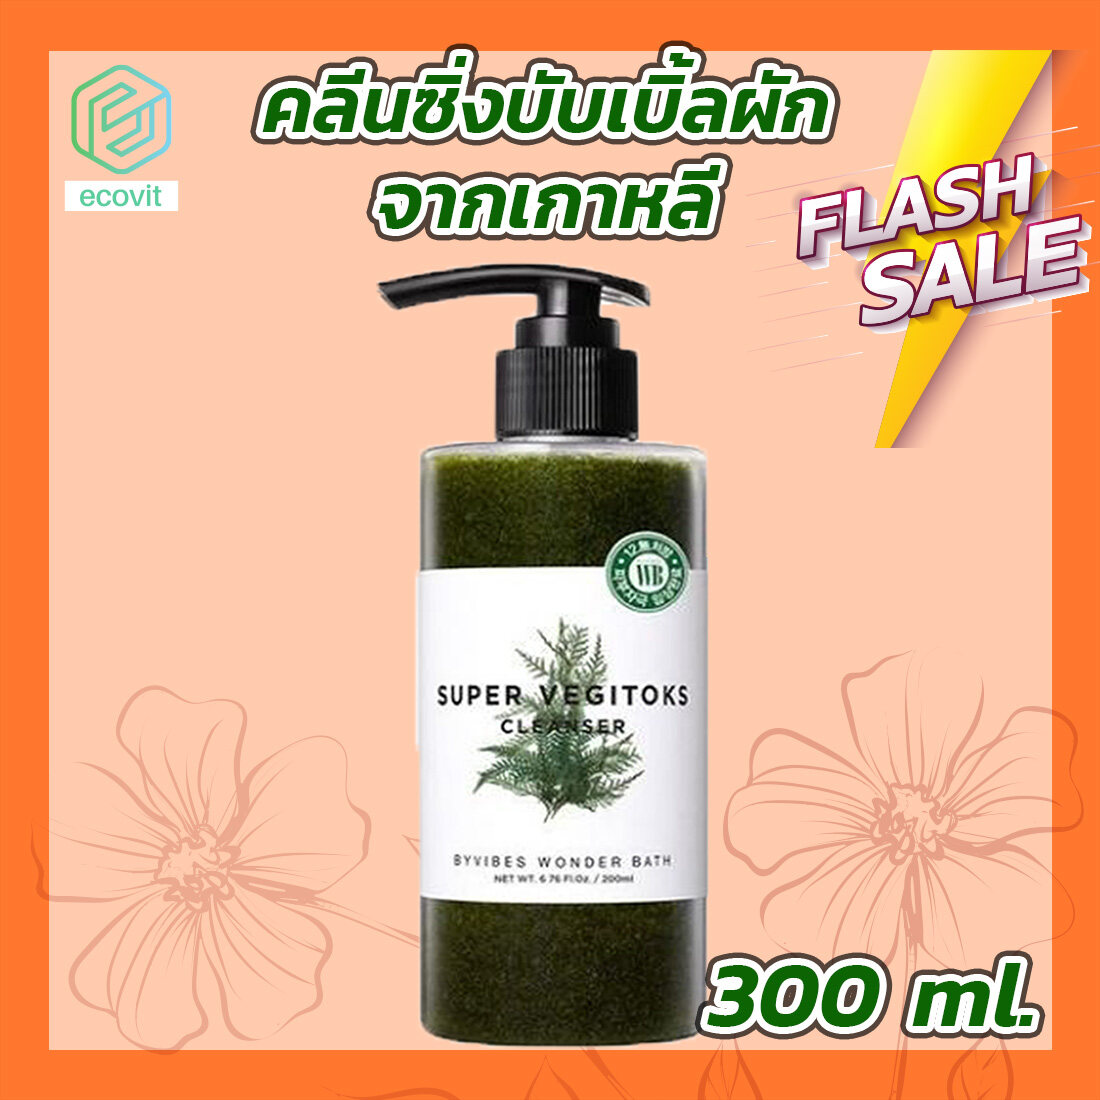 คลีนซิ่งผัก Wonder Bath Super Vegitoks Cleanser [สีเขียว] [1 ขวด] [300 ml.] By Ecovit